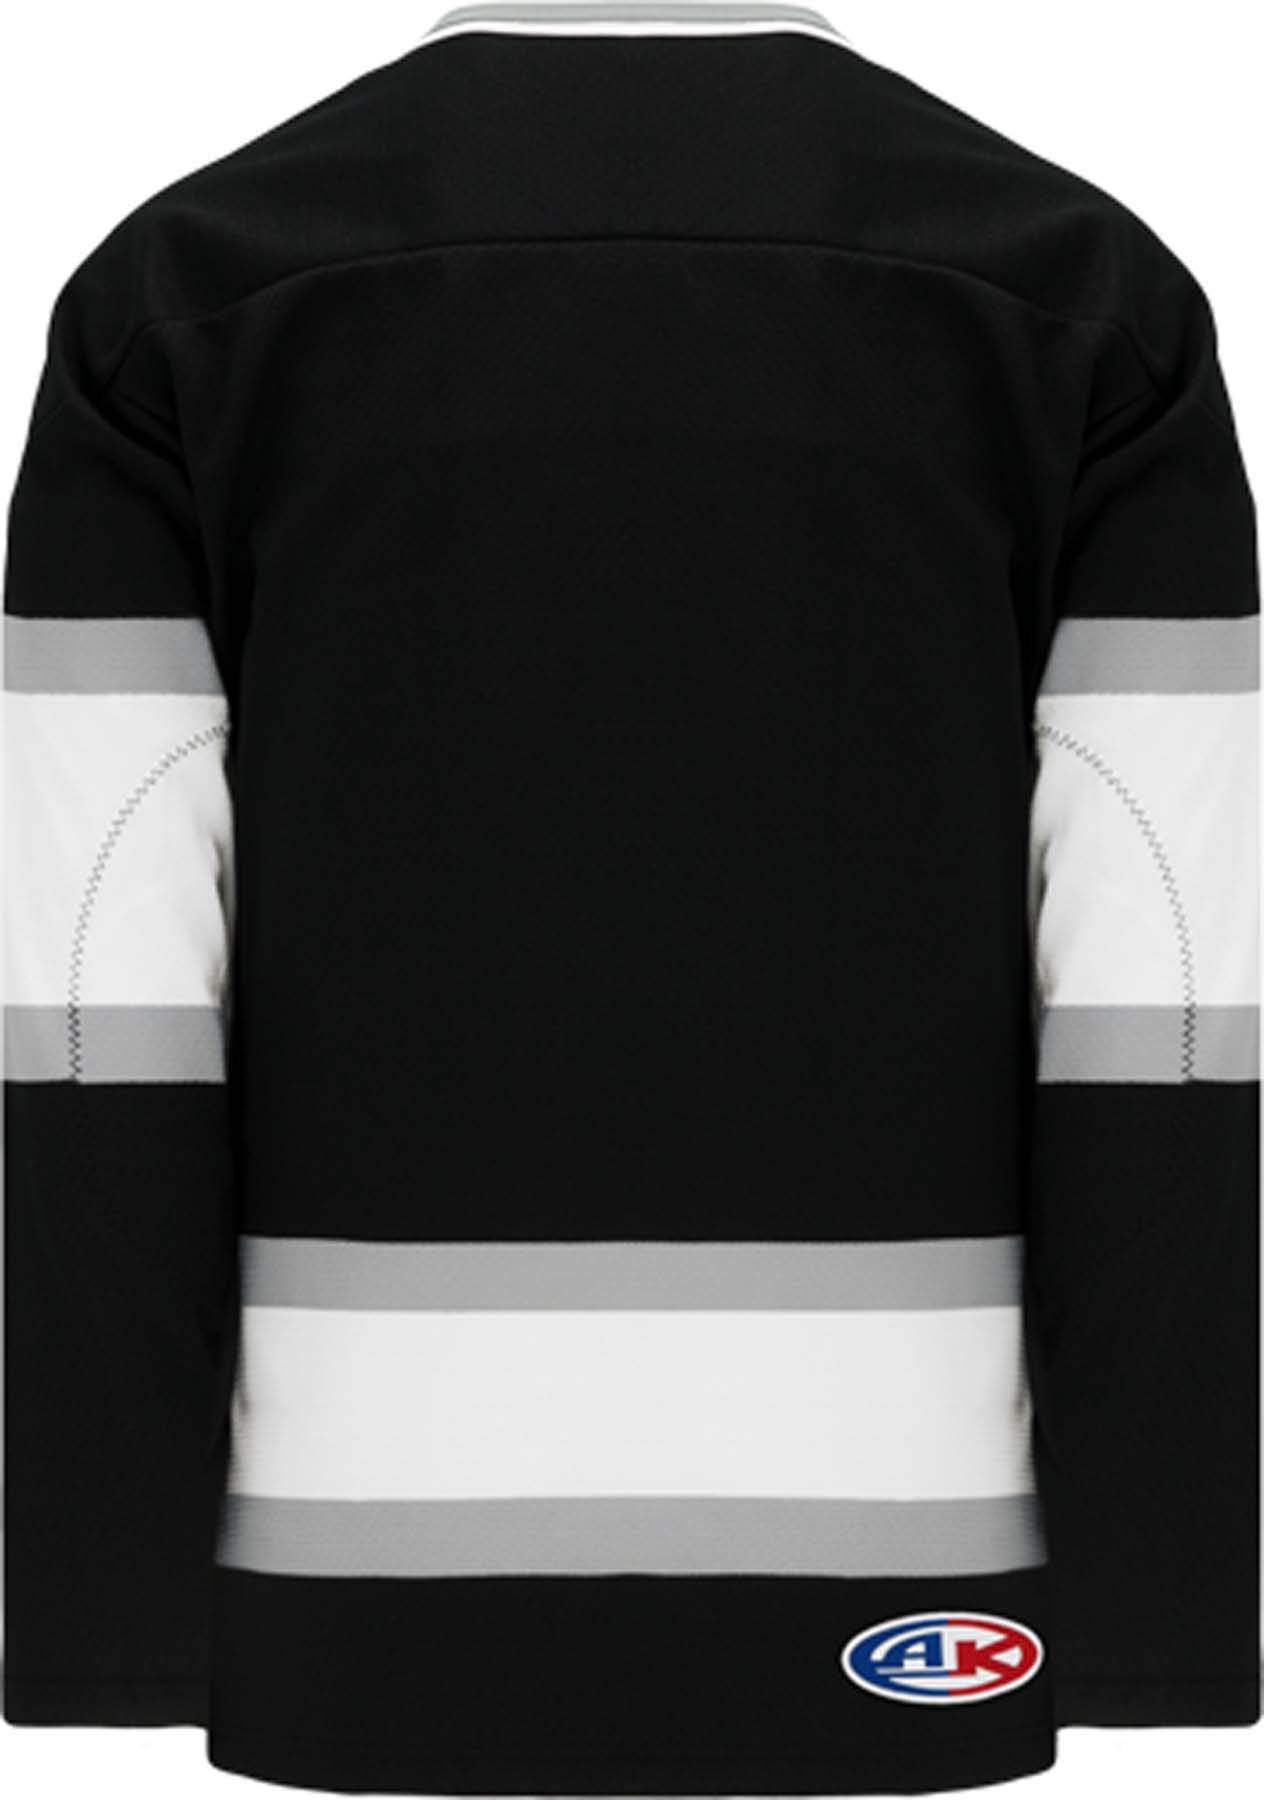 Old LA Black Sleeve Stripes Pro Canada / USA Made  Hockey Jerseys